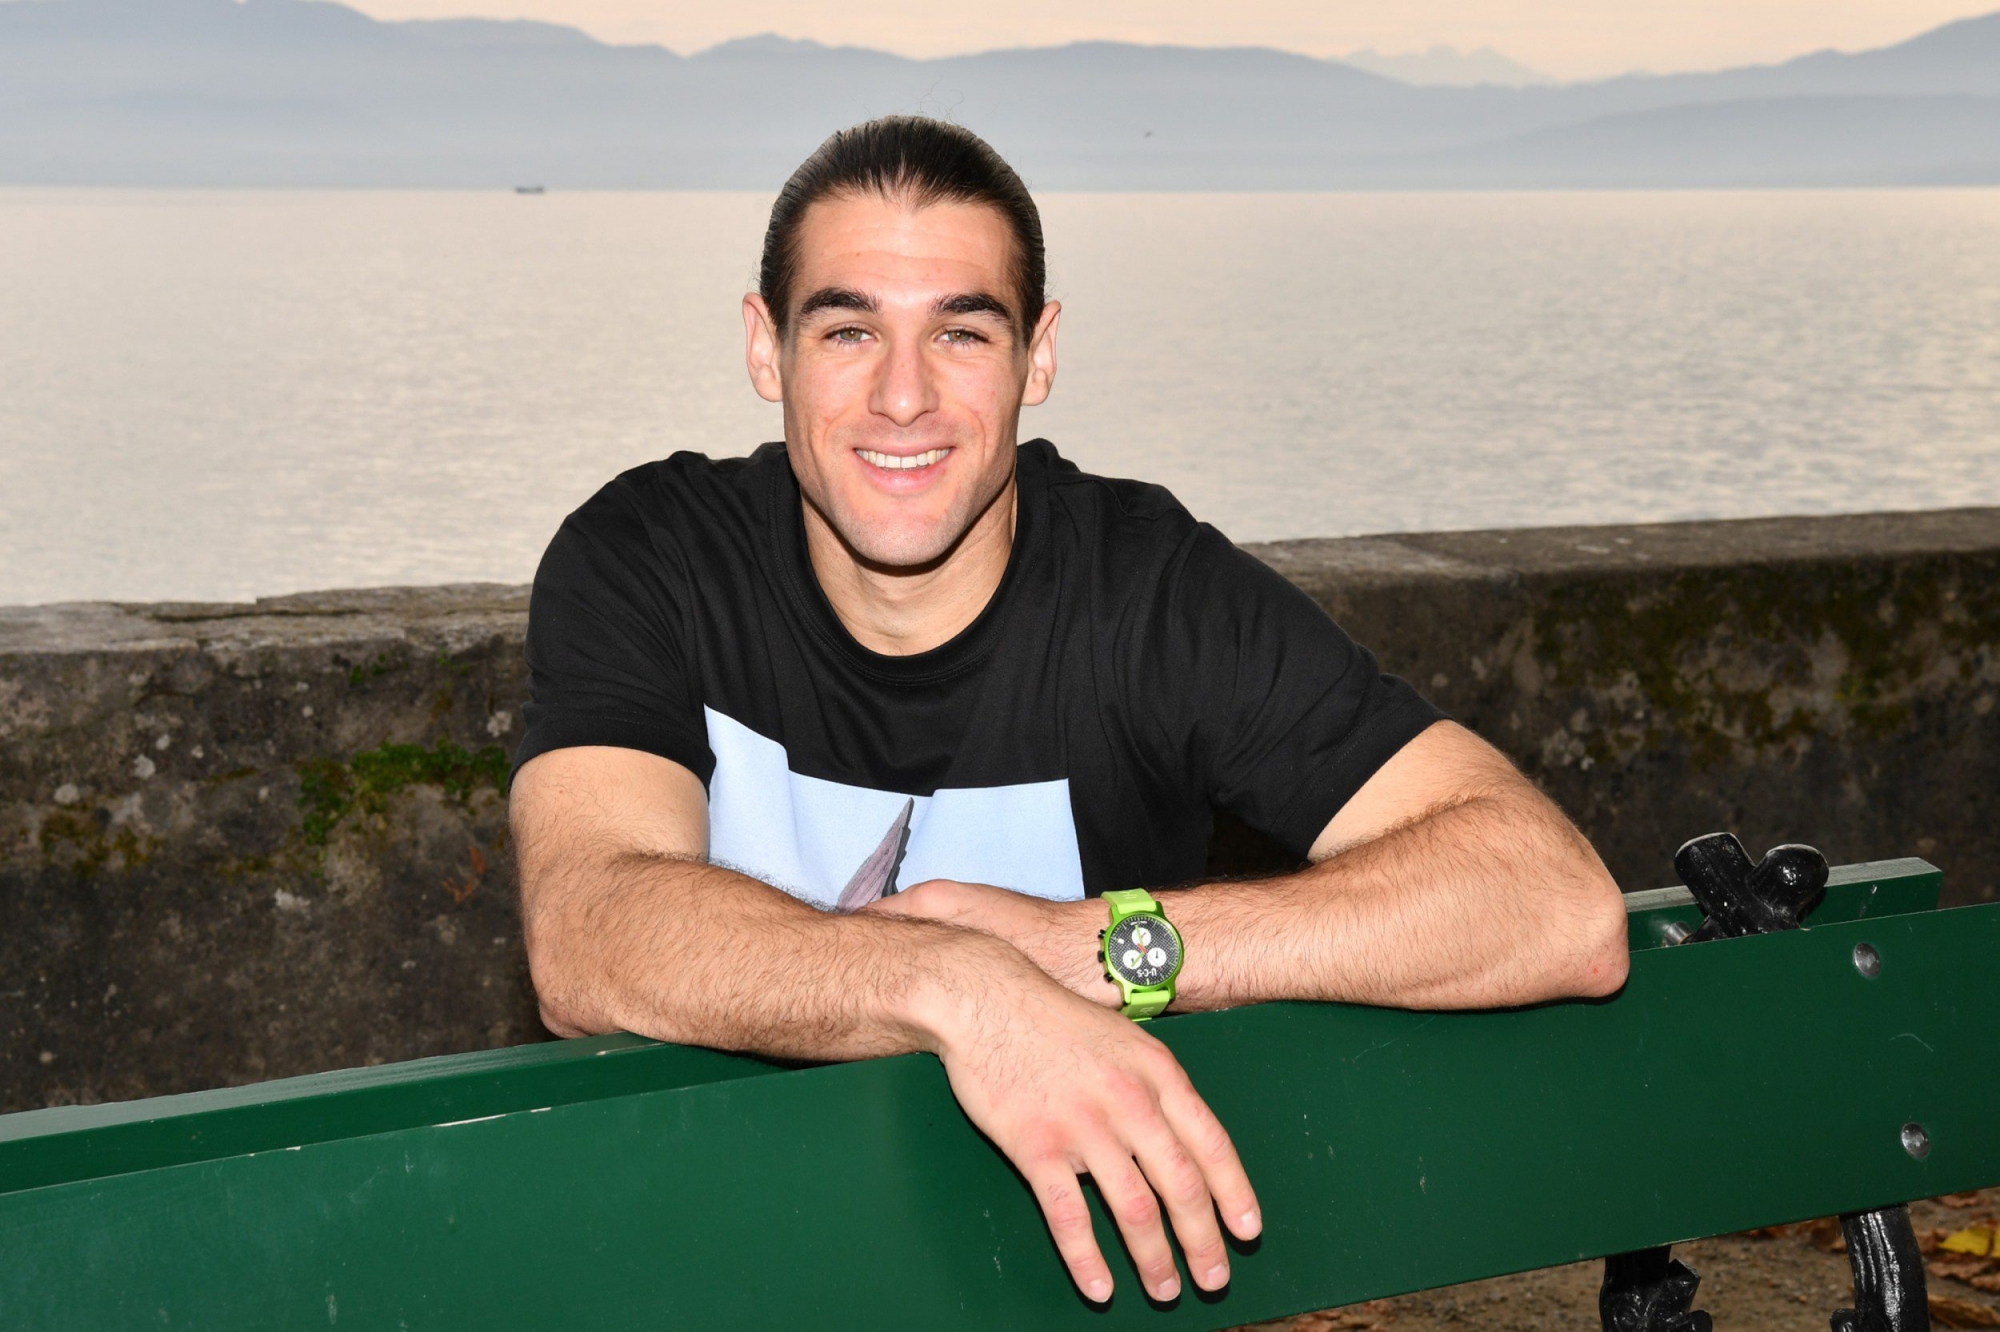 Julian Agurcia a 25 ans, habite Rolle et consacre son temps libre au basketball.